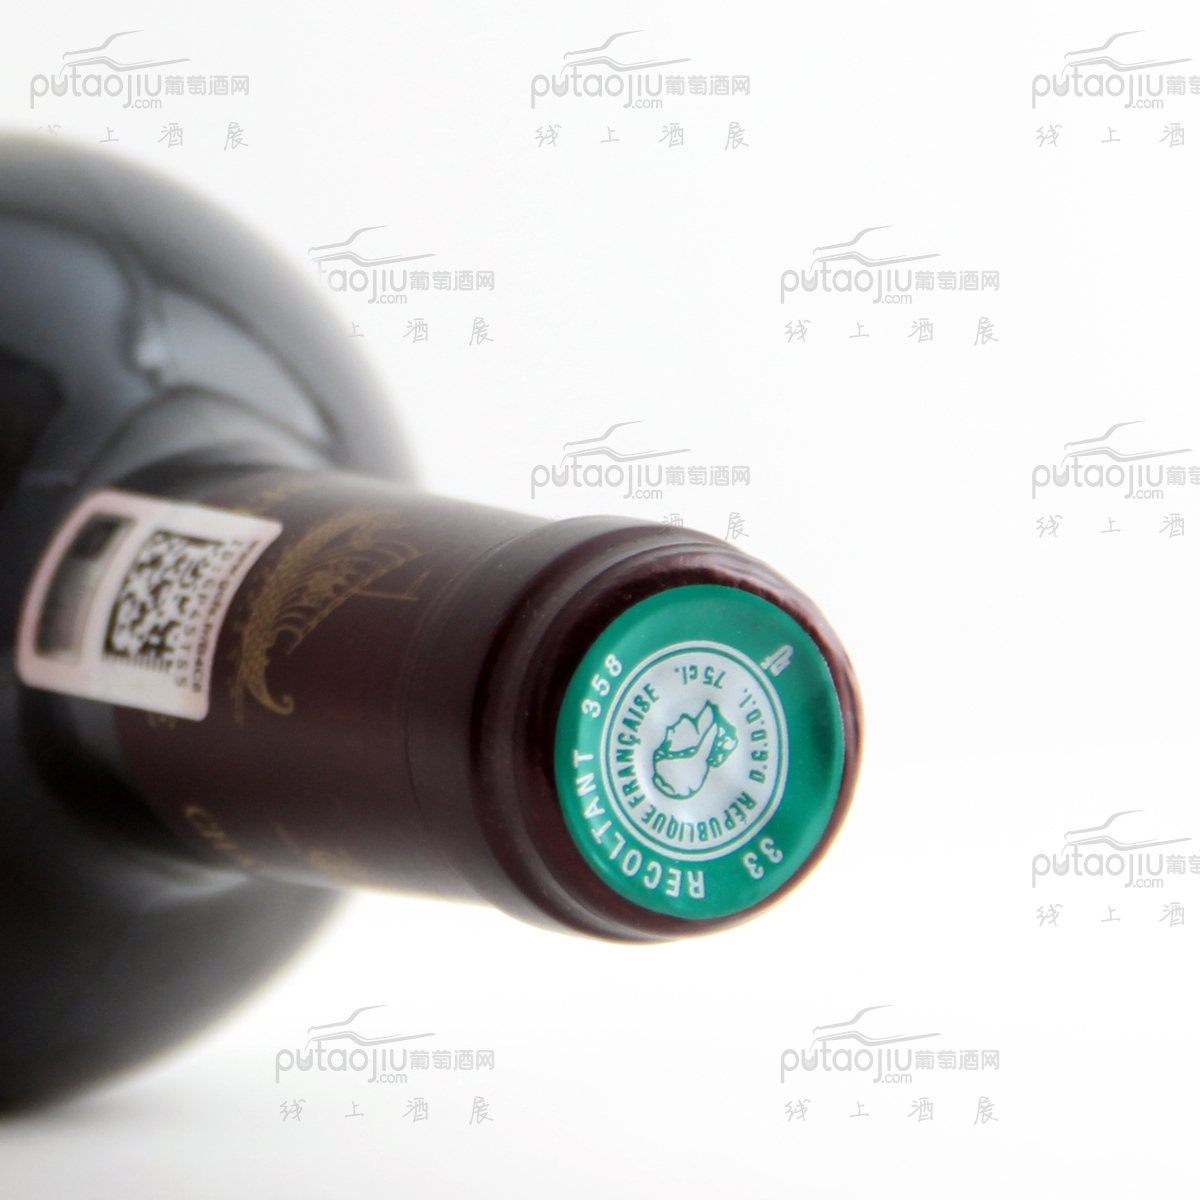 法国圣朱利安龙船酒庄混酿AOC法定产区干红葡萄酒